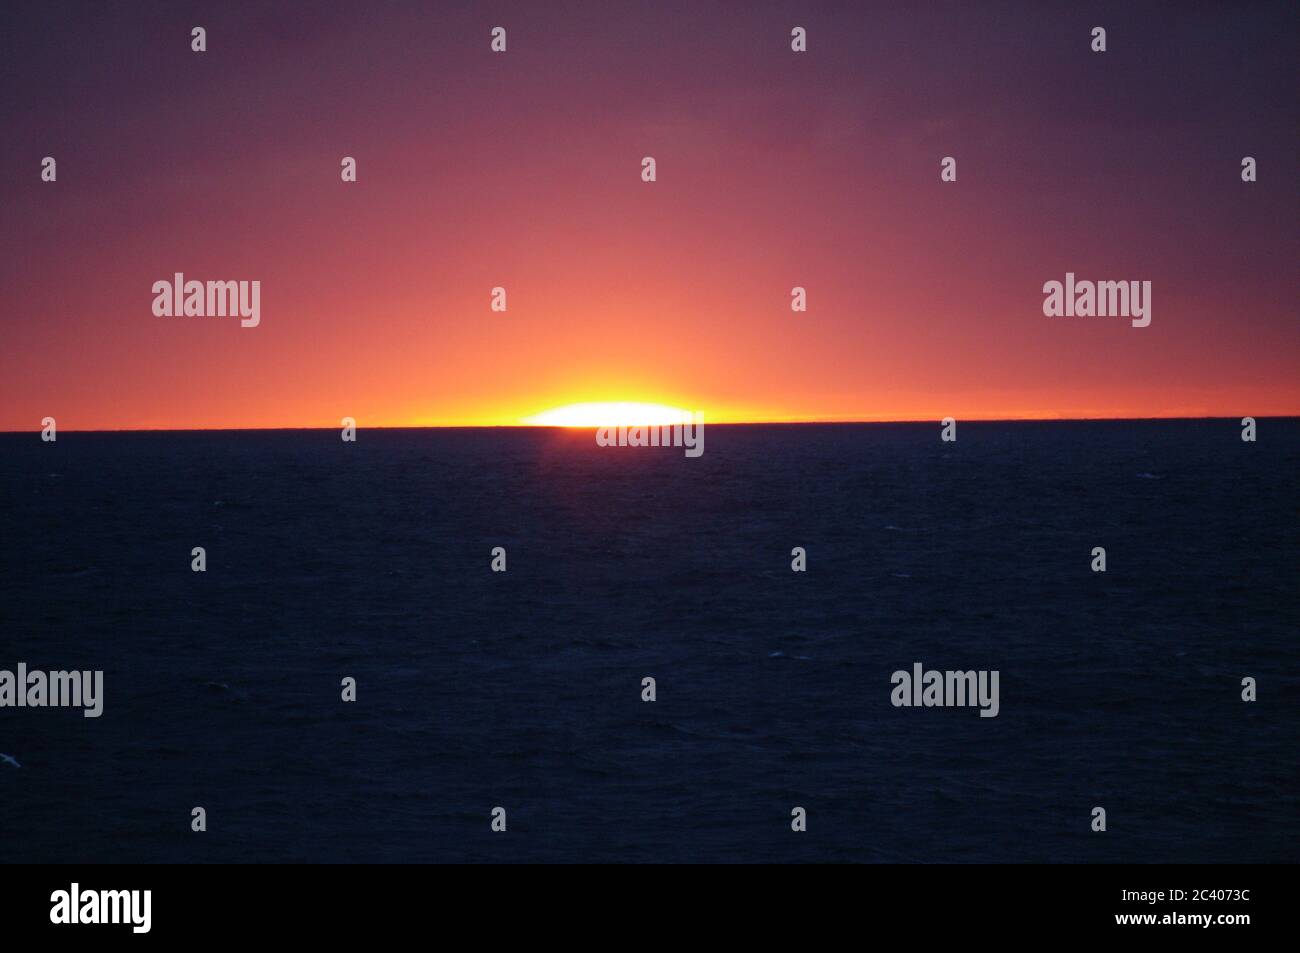 Secuencia de imágenes de una puesta de sol desde el mismo punto de vista, puesta de sol en el mar, horizonte al atardecer, horizonte al atardecer sobre el mar horizonte magenta Foto de stock